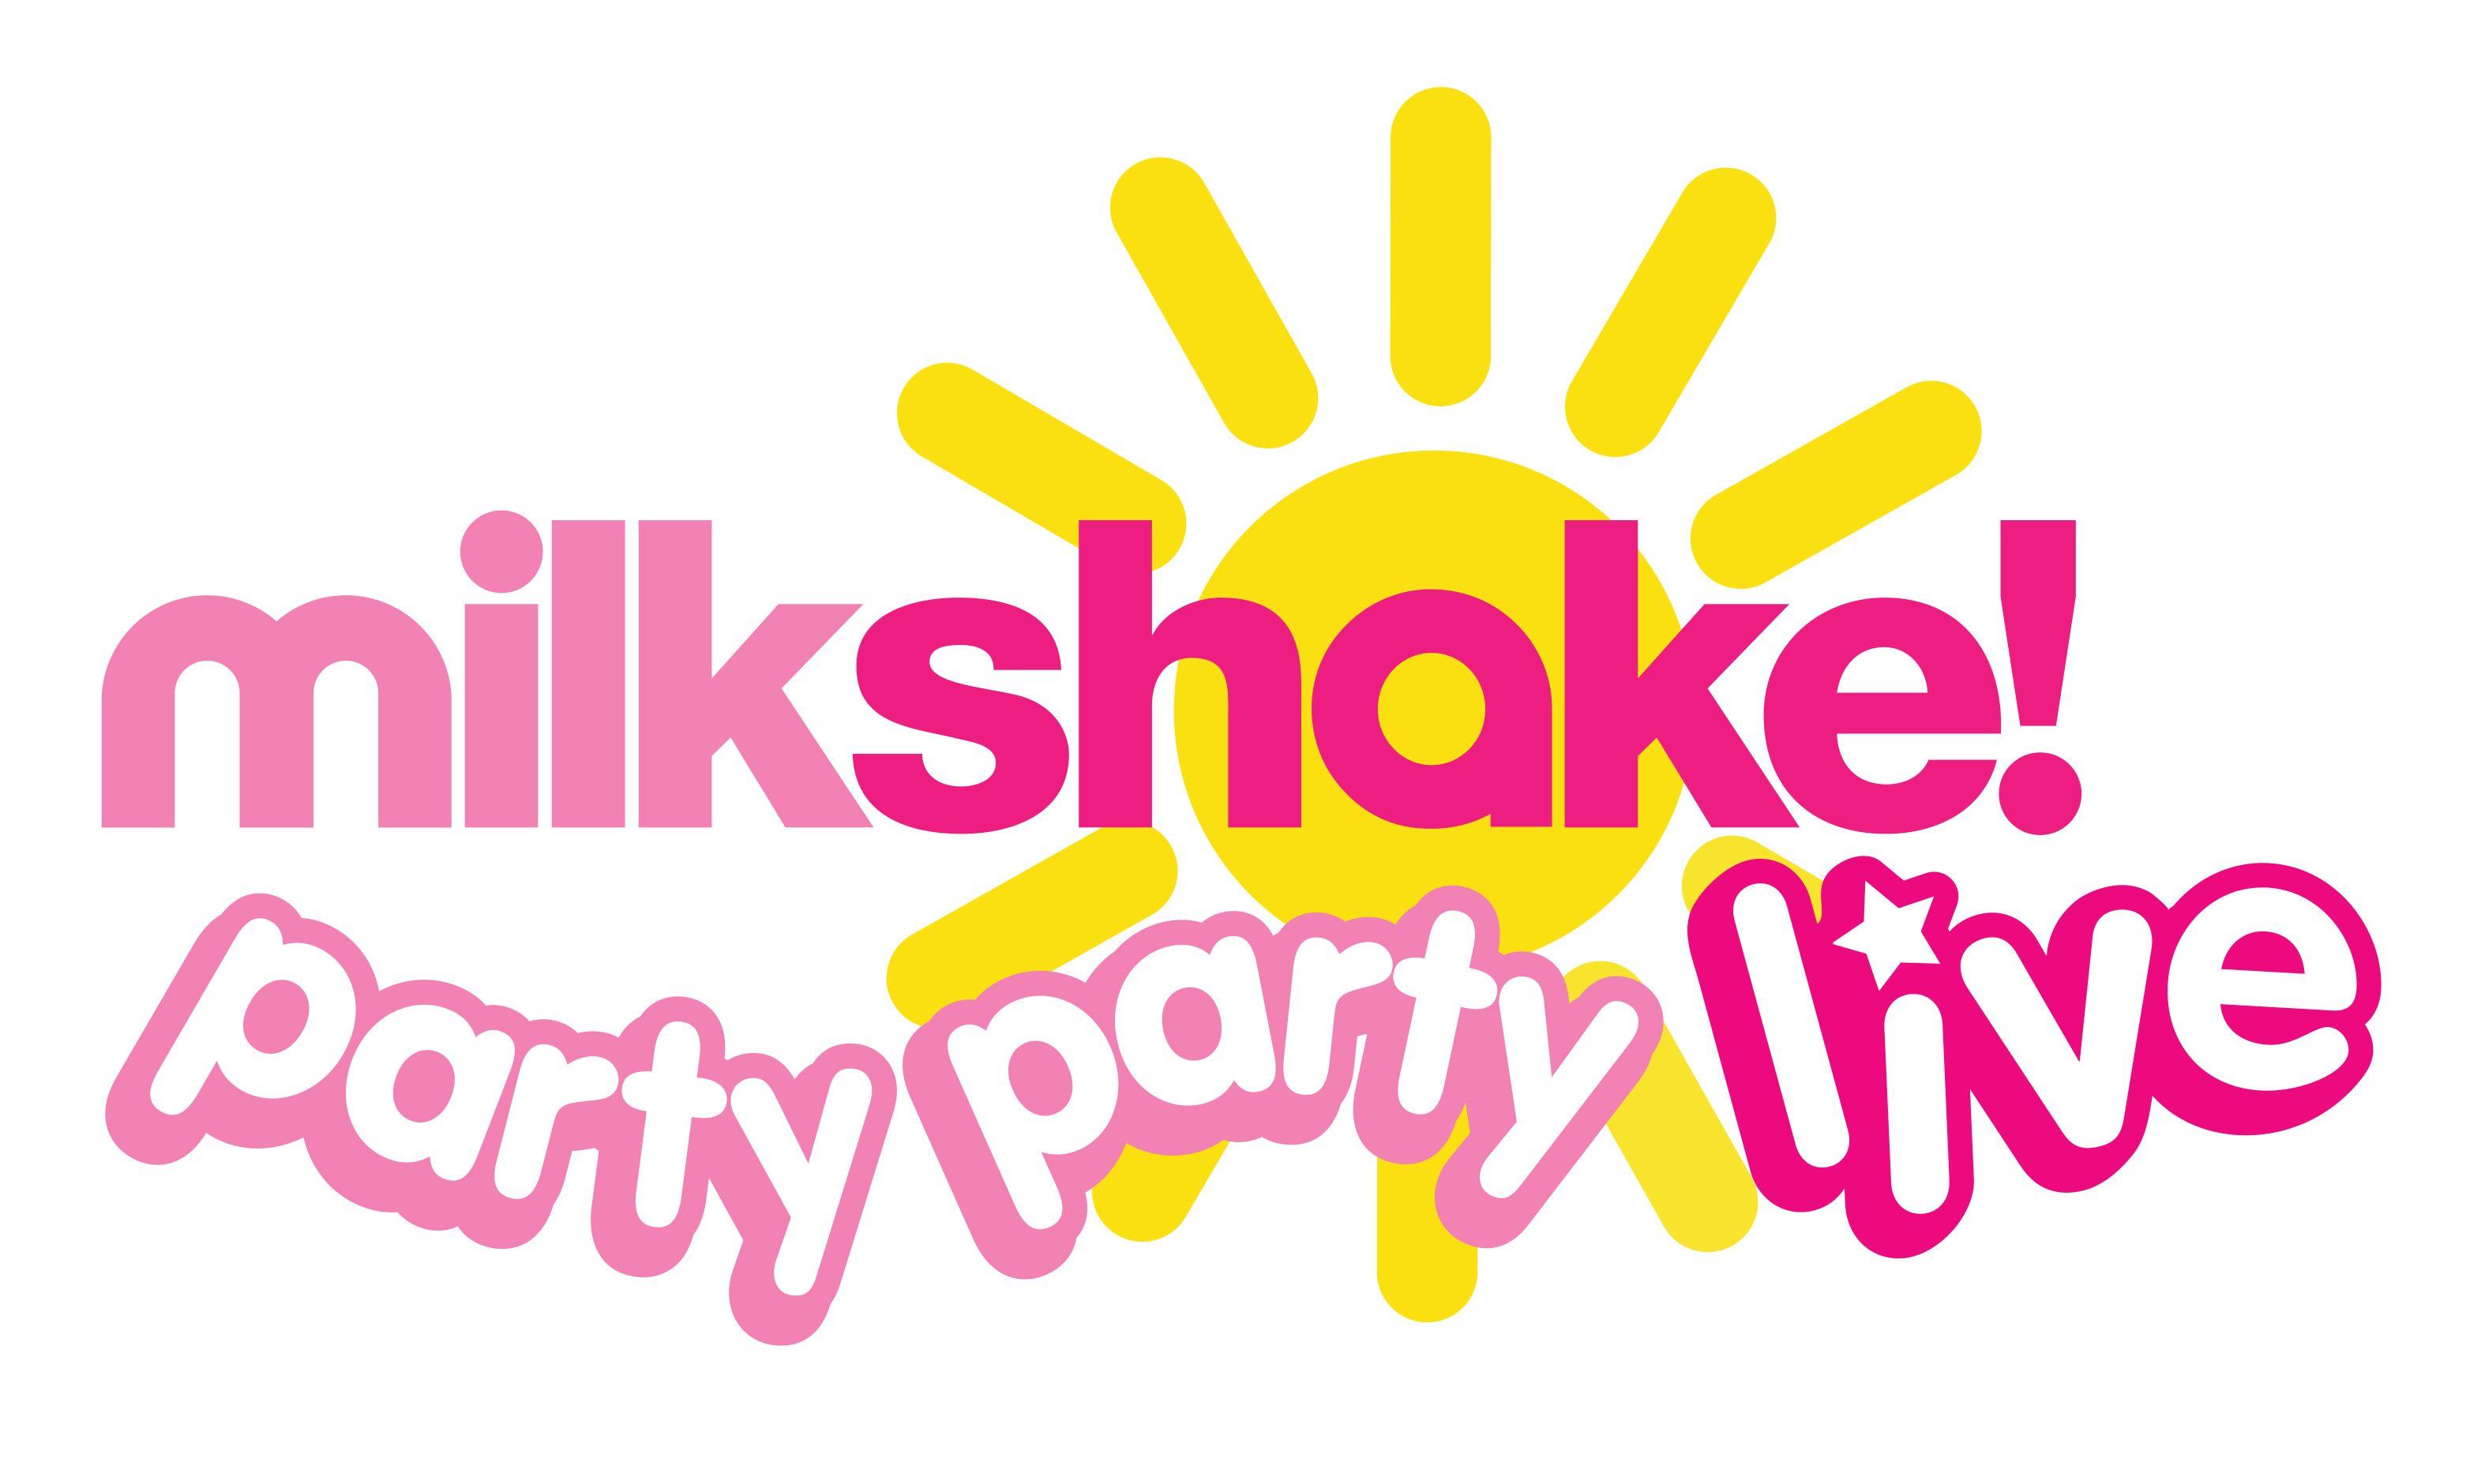 Milkshake Logo - Something For the Kids! Live!